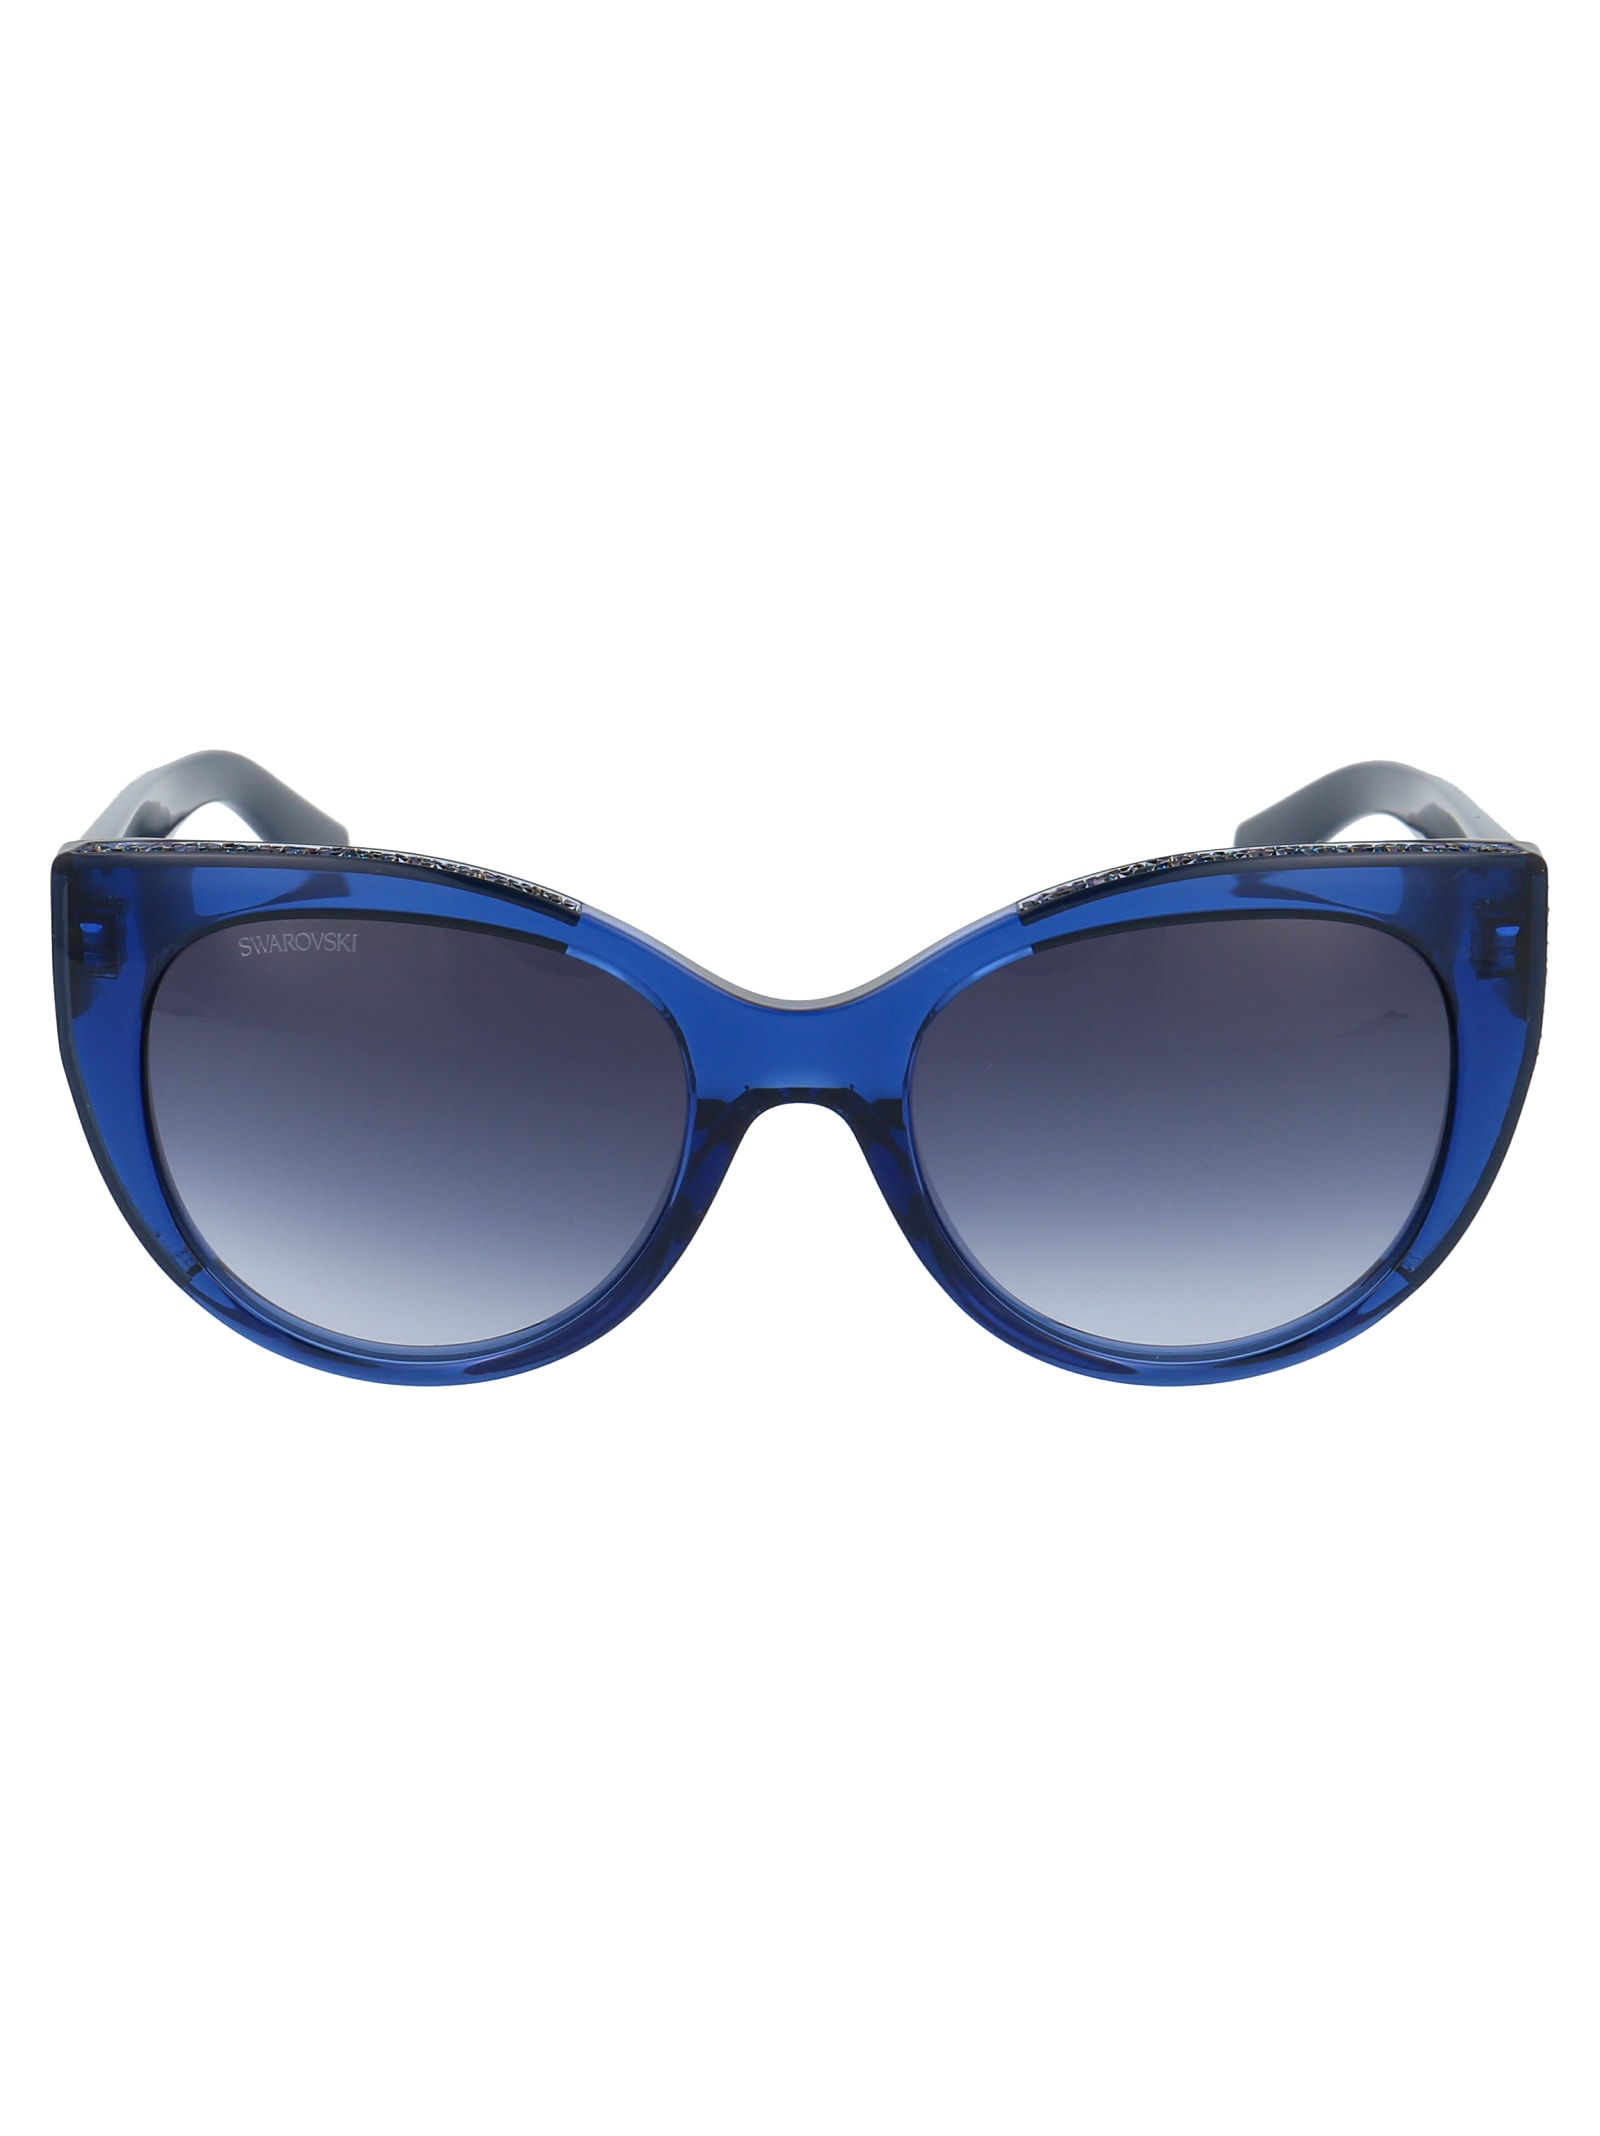 Swarovski Sk0202 Sunglasses